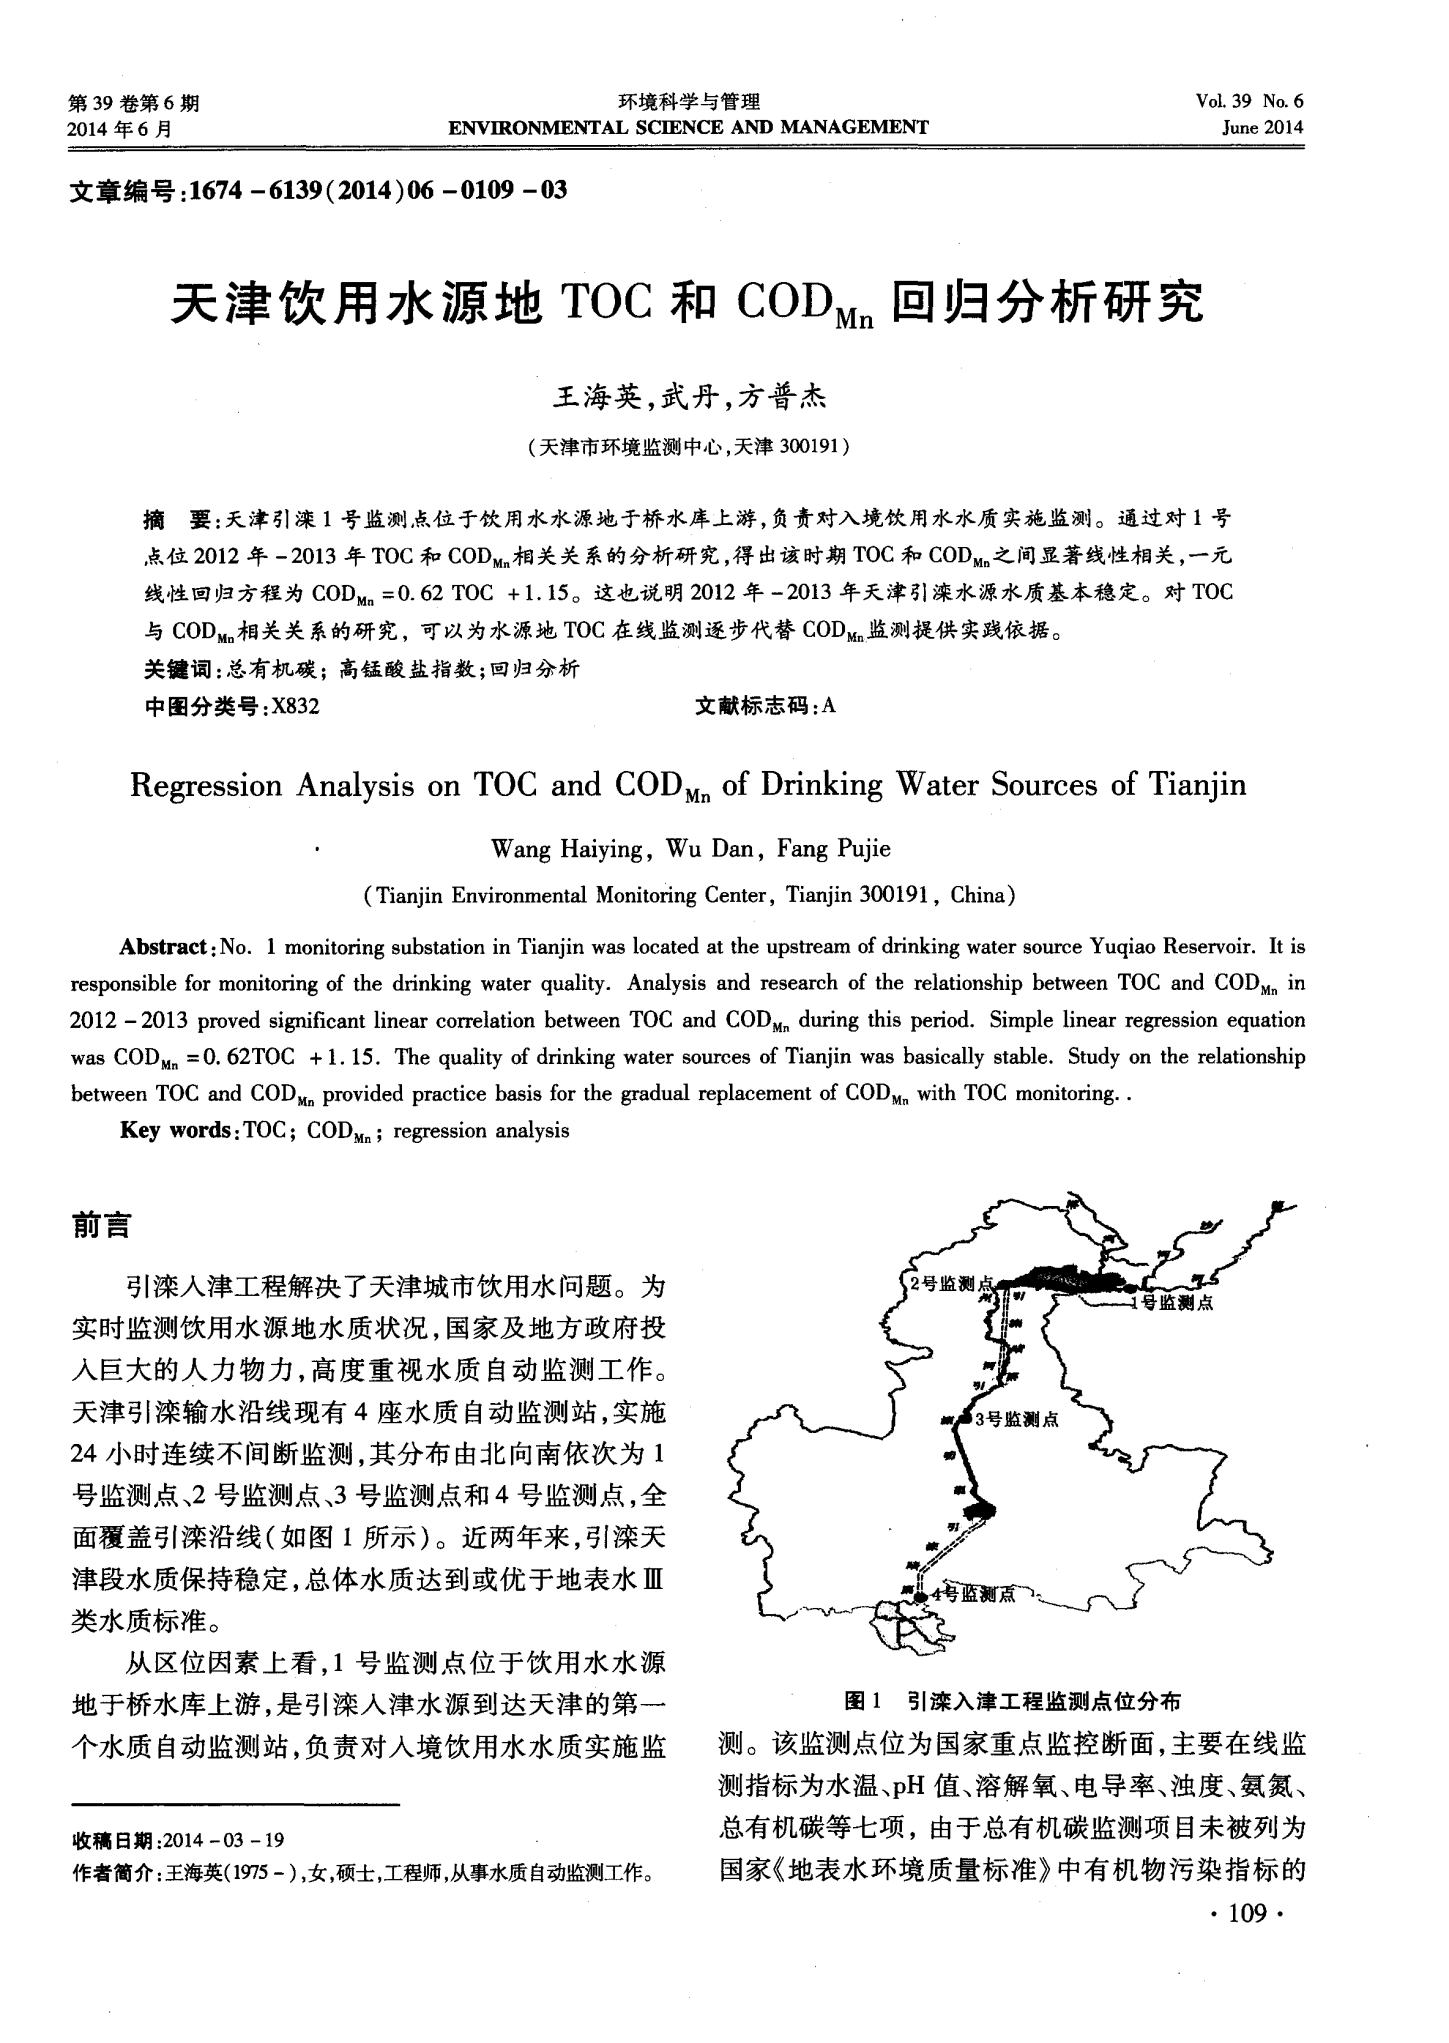 天津饮用水源地TOC和CODMn回归分析研究